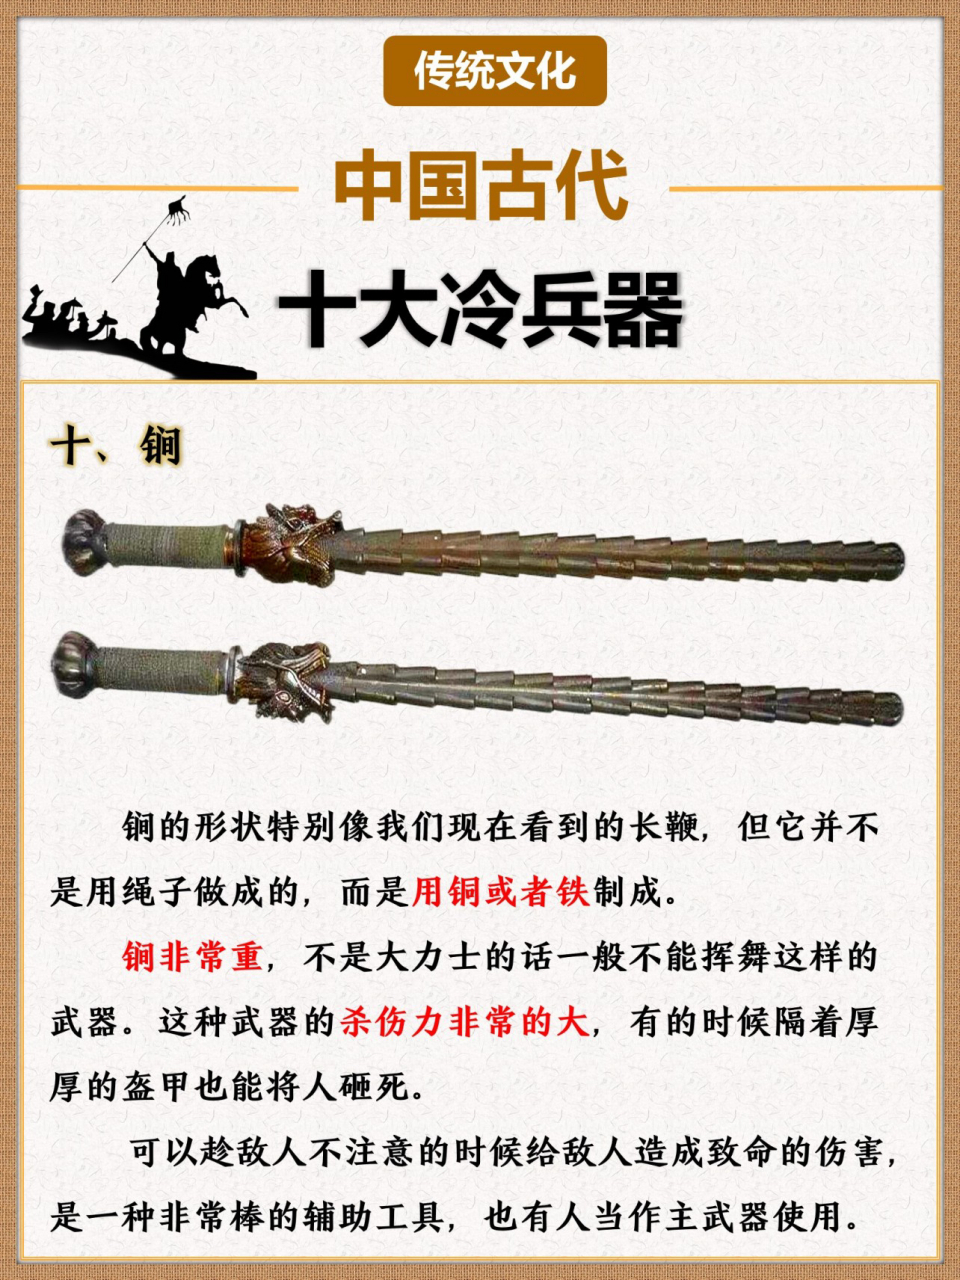 国古代十大冷兵器97第一名是剑还是刀71  95中国古代有十八般